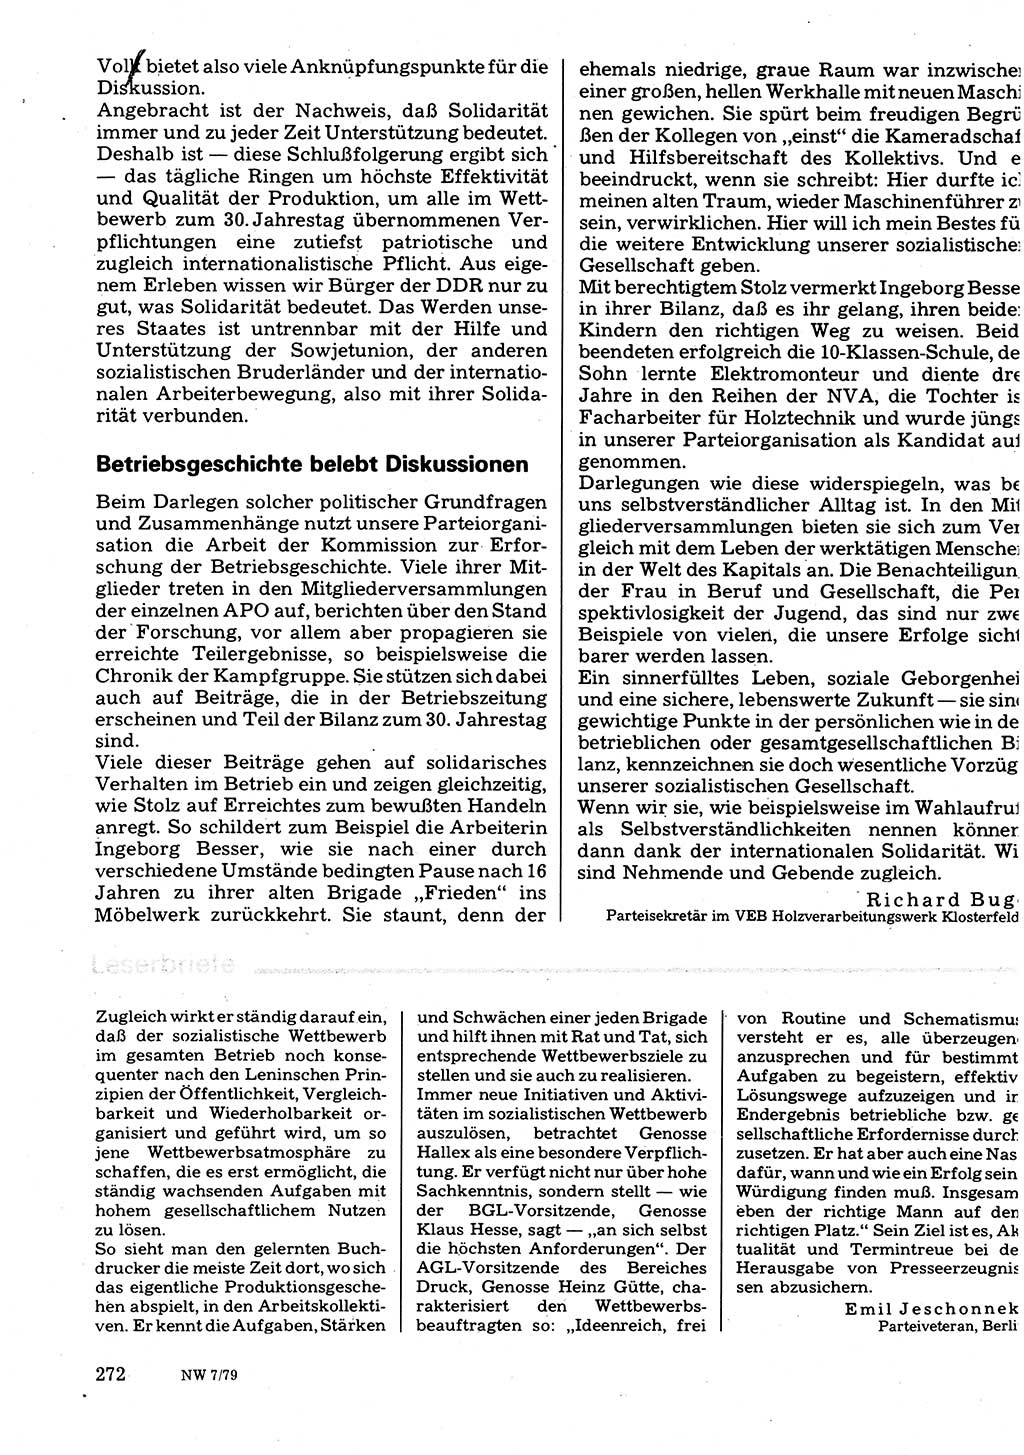 Neuer Weg (NW), Organ des Zentralkomitees (ZK) der SED (Sozialistische Einheitspartei Deutschlands) für Fragen des Parteilebens, 34. Jahrgang [Deutsche Demokratische Republik (DDR)] 1979, Seite 272 (NW ZK SED DDR 1979, S. 272)